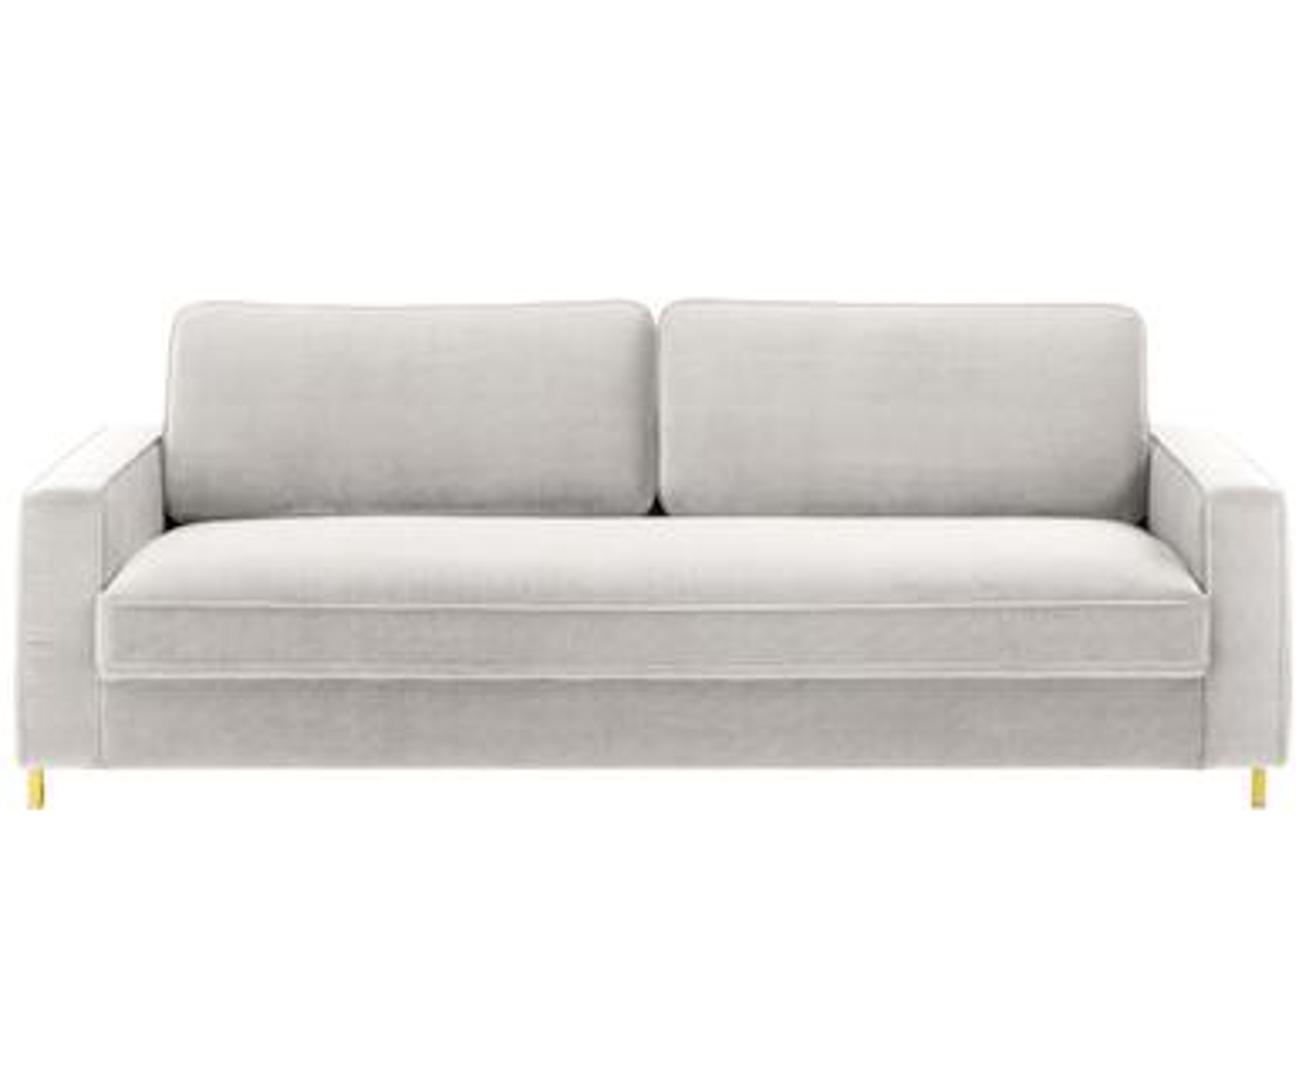 Jednostavnih linija i neutralne boje ovaj kauč je odlična investicija. Cijena je snižena s 10.215 kuna na 3064 kune